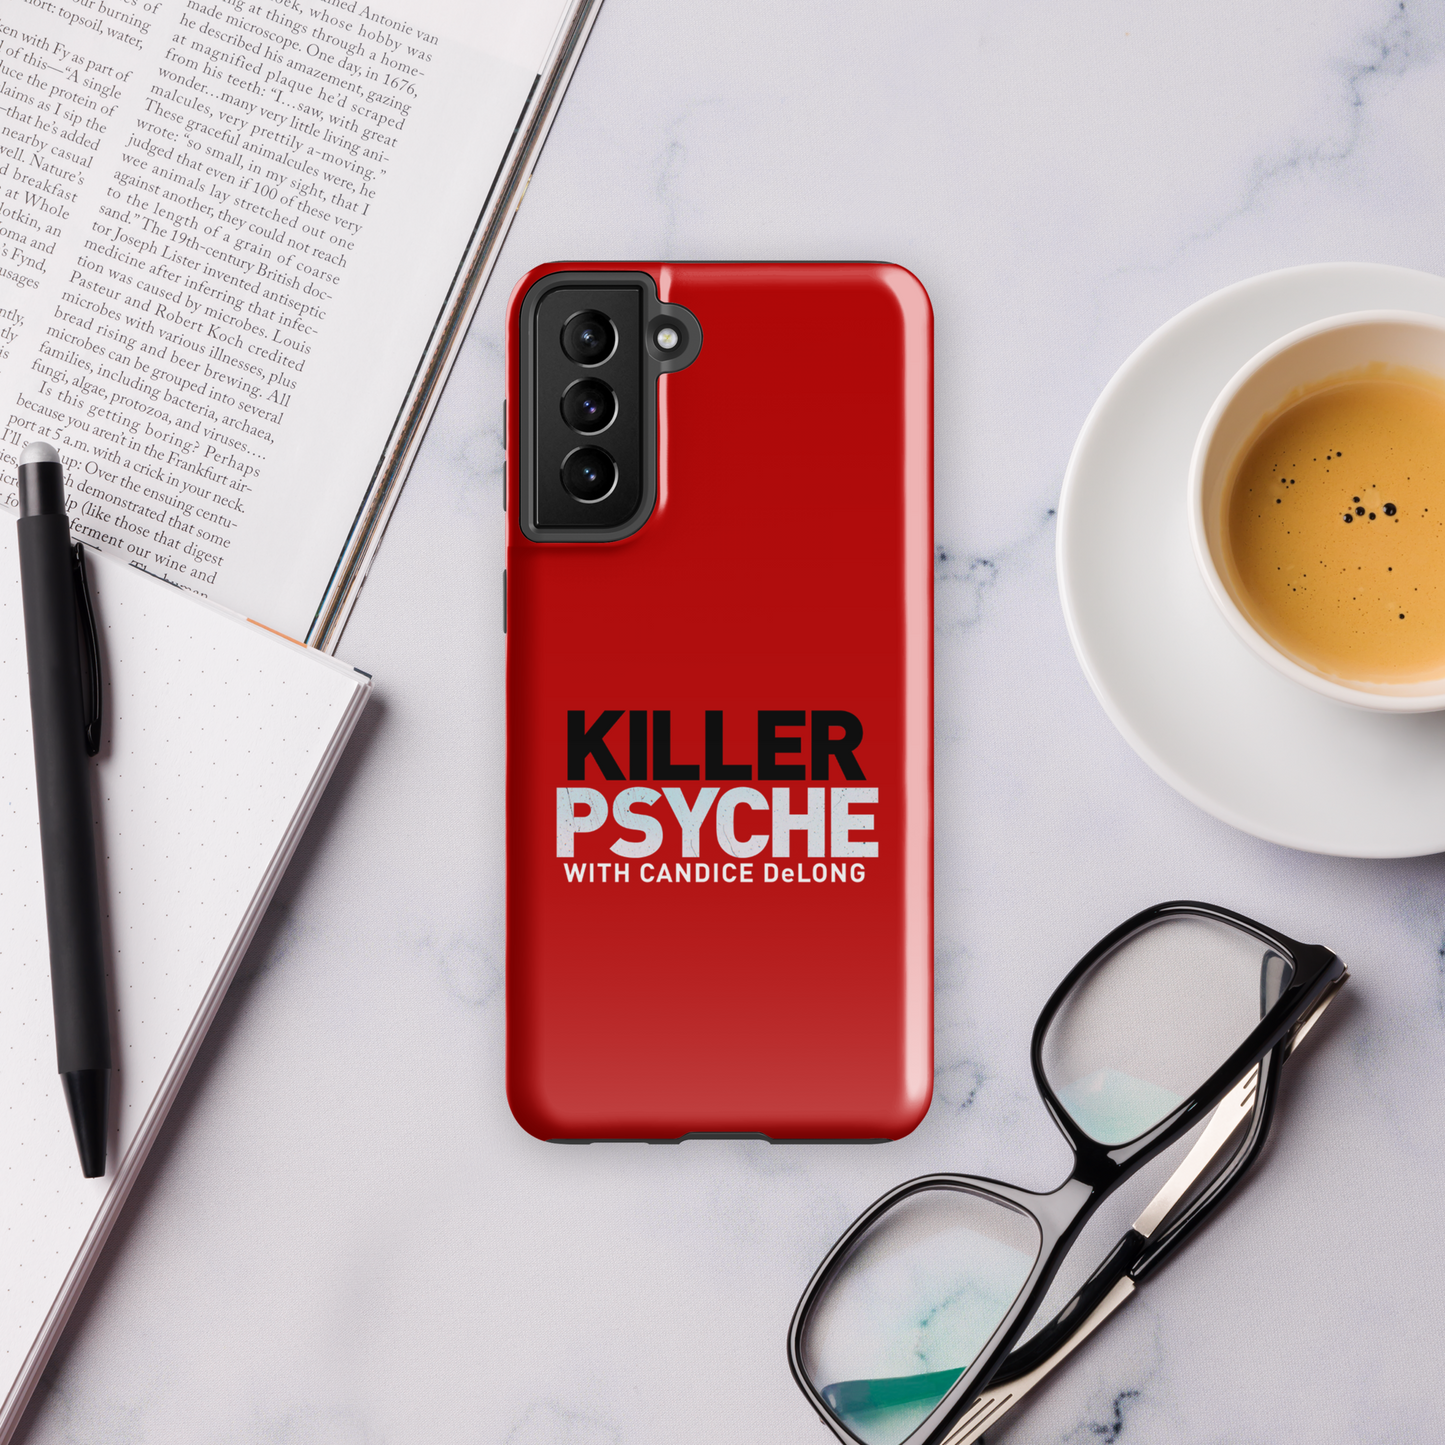 Killer Psyche Logo Tough Phone Case - Samsung